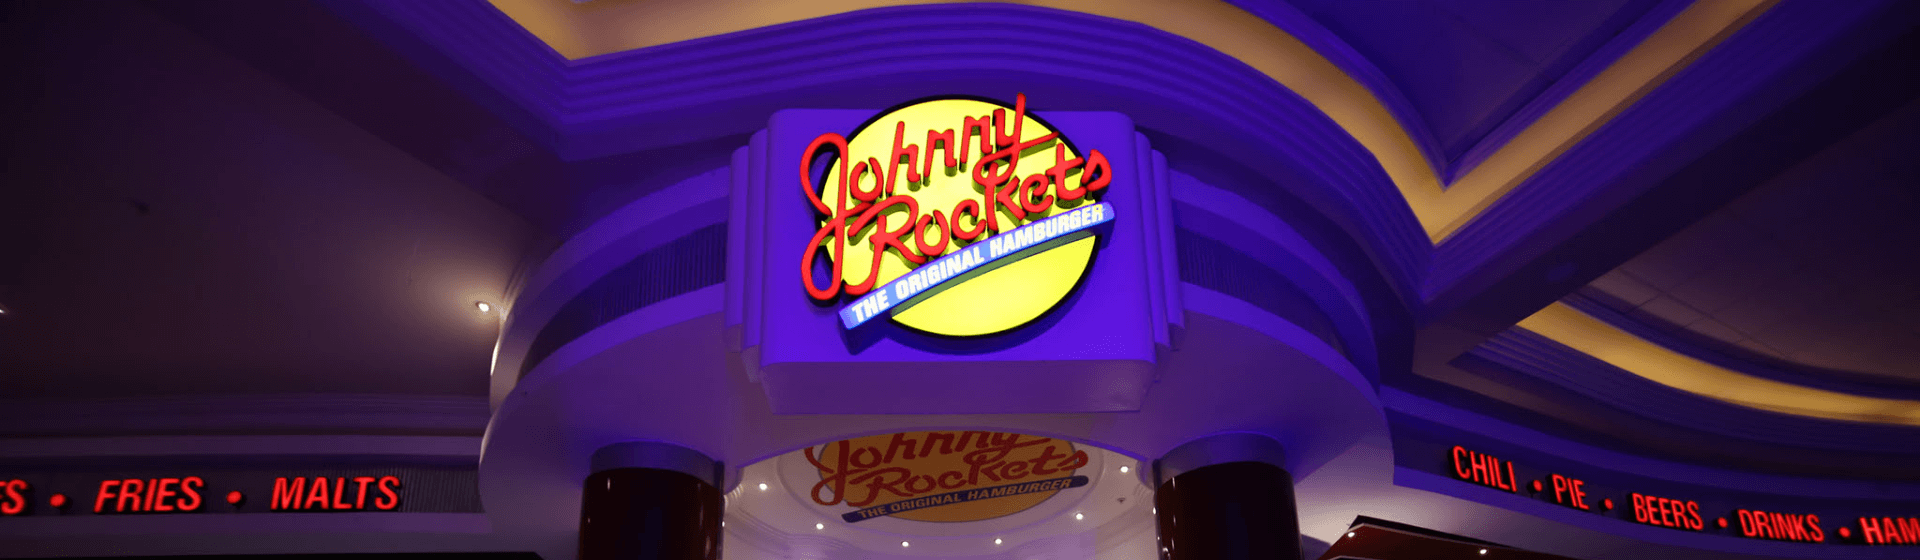 <p>JOHNNY ROCKETS</p>
